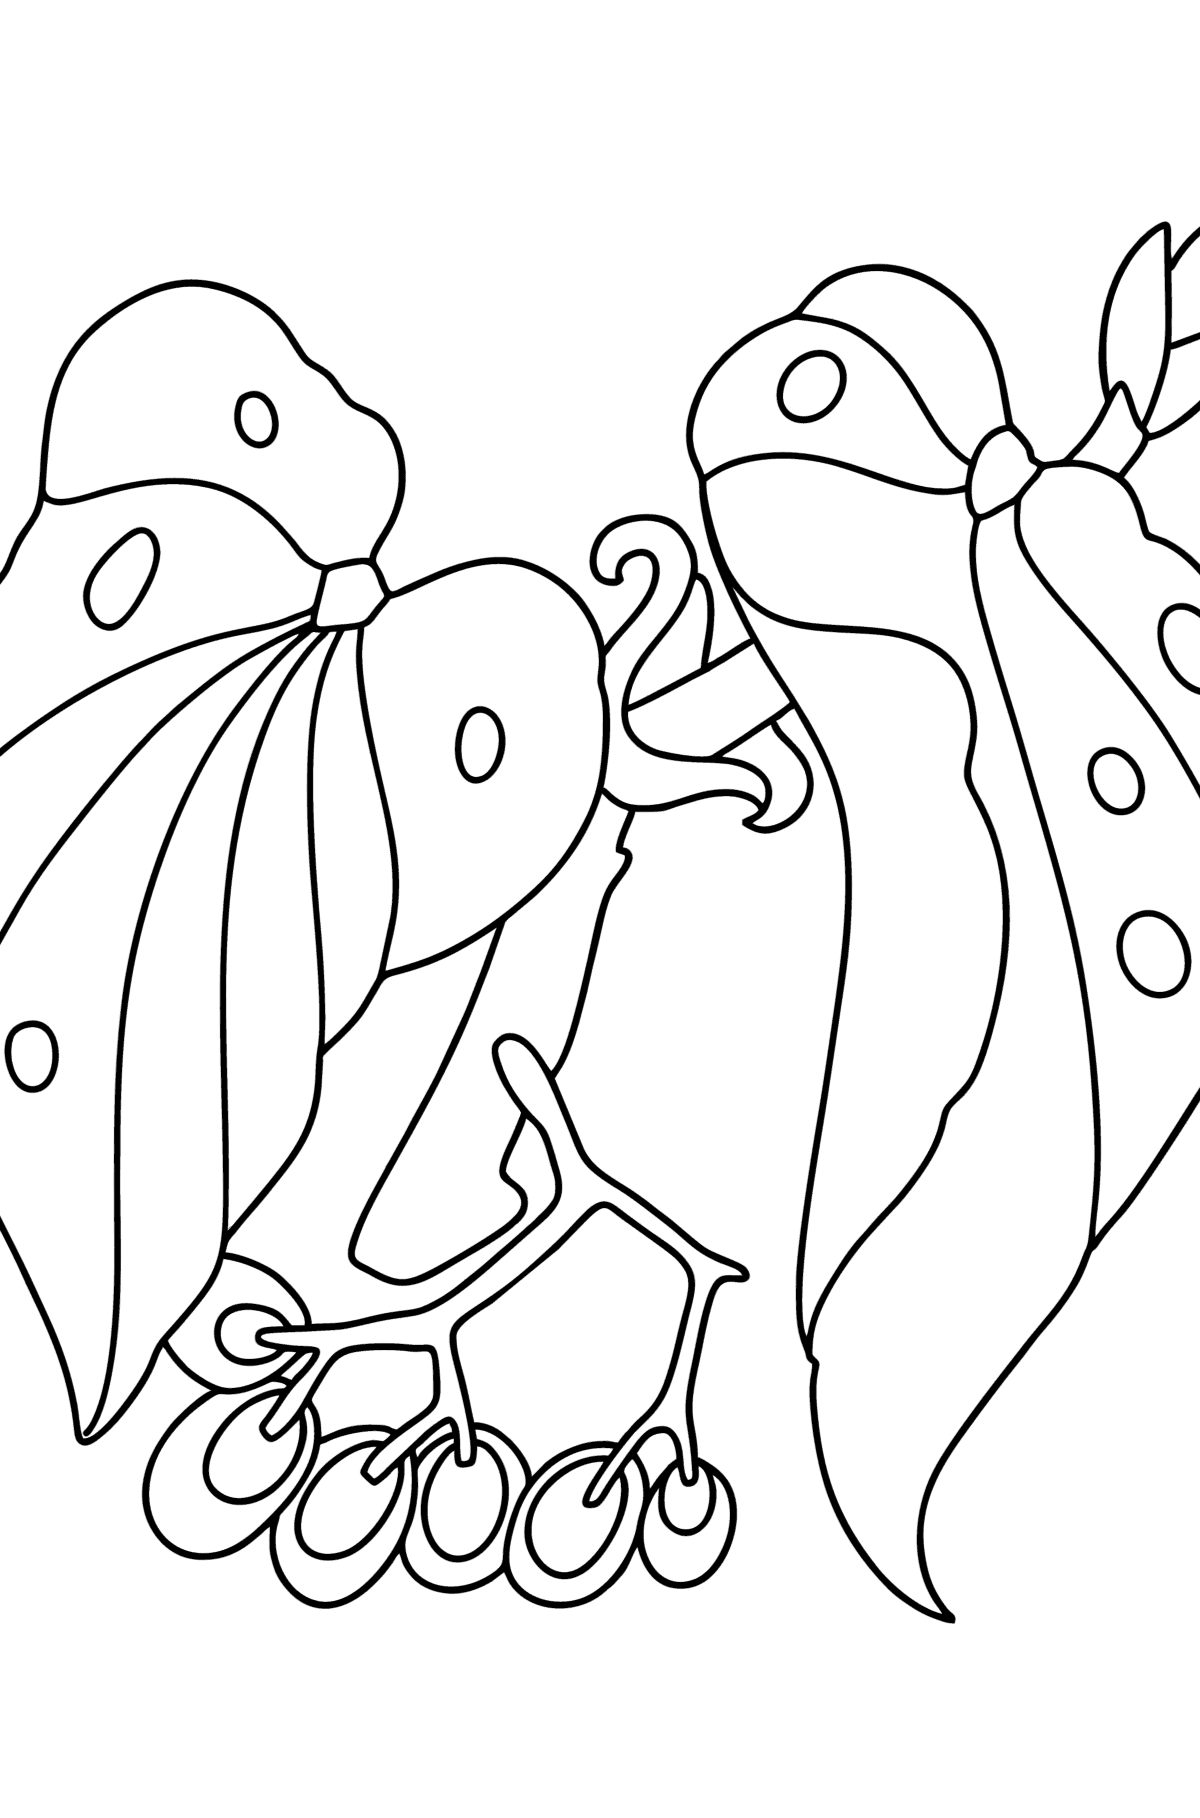 Dibujo de Begonia para colorear - Dibujos para Colorear para Niños